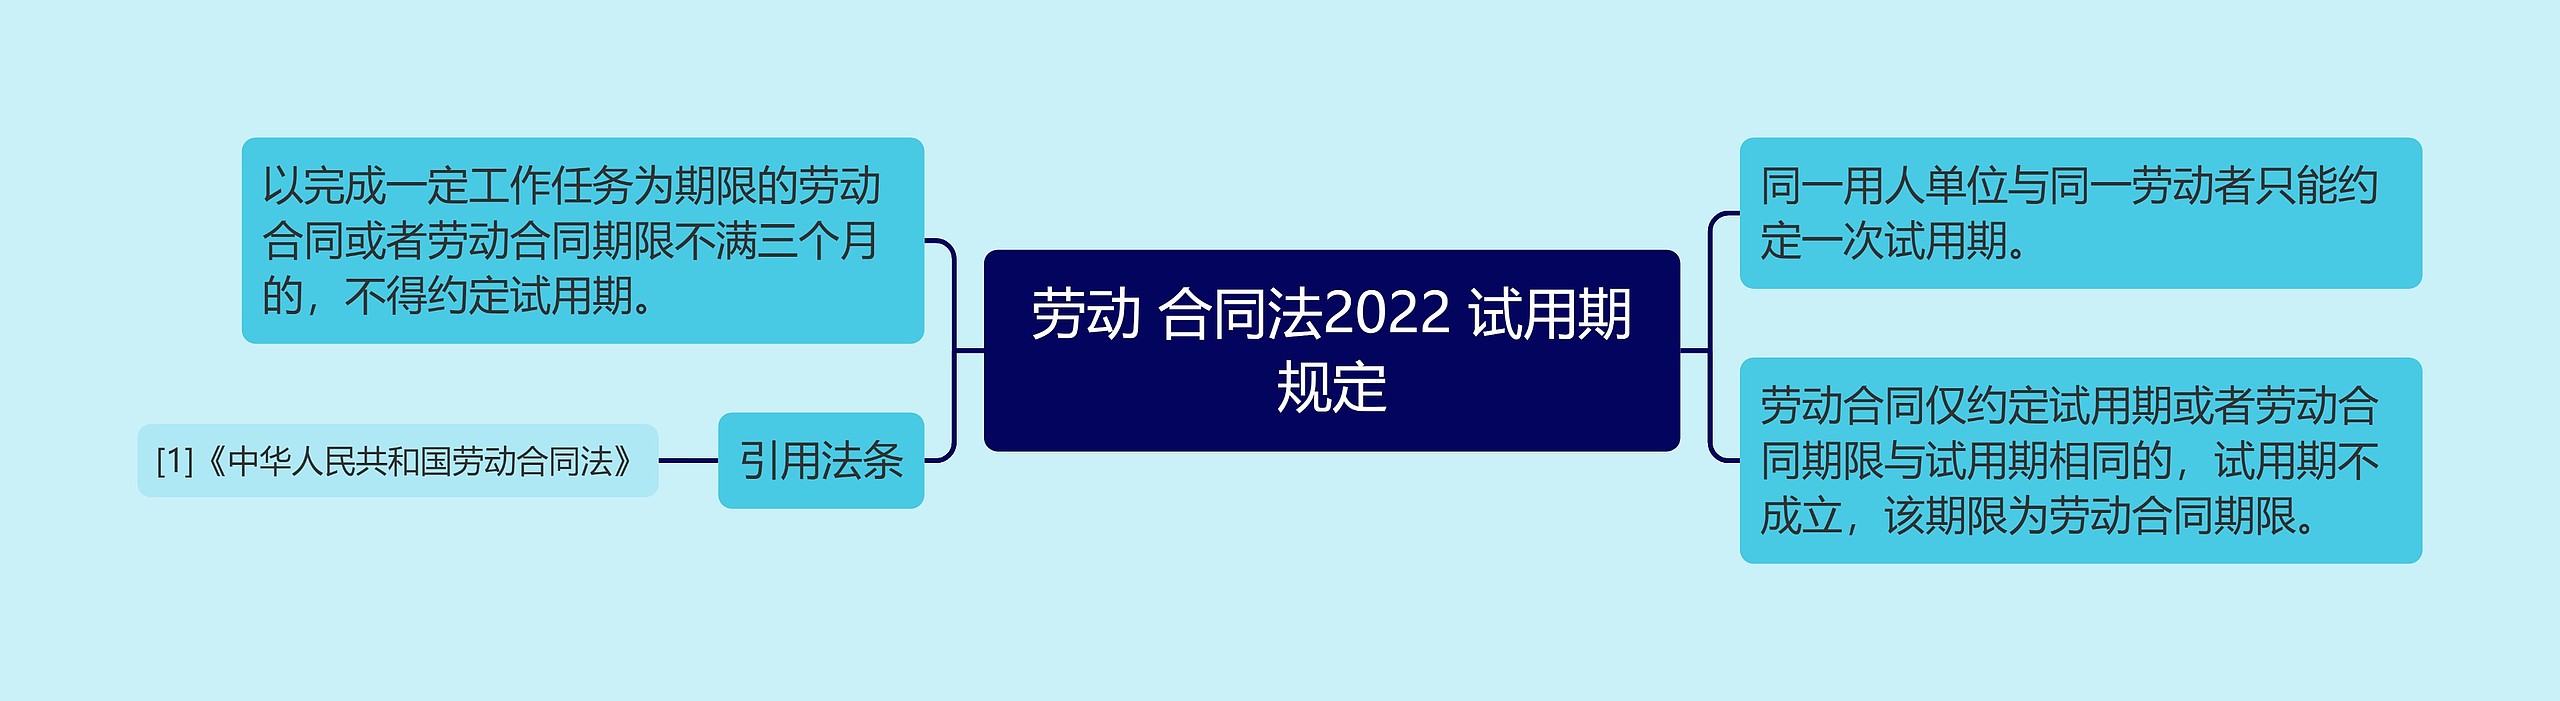 劳动 合同法2022 试用期规定